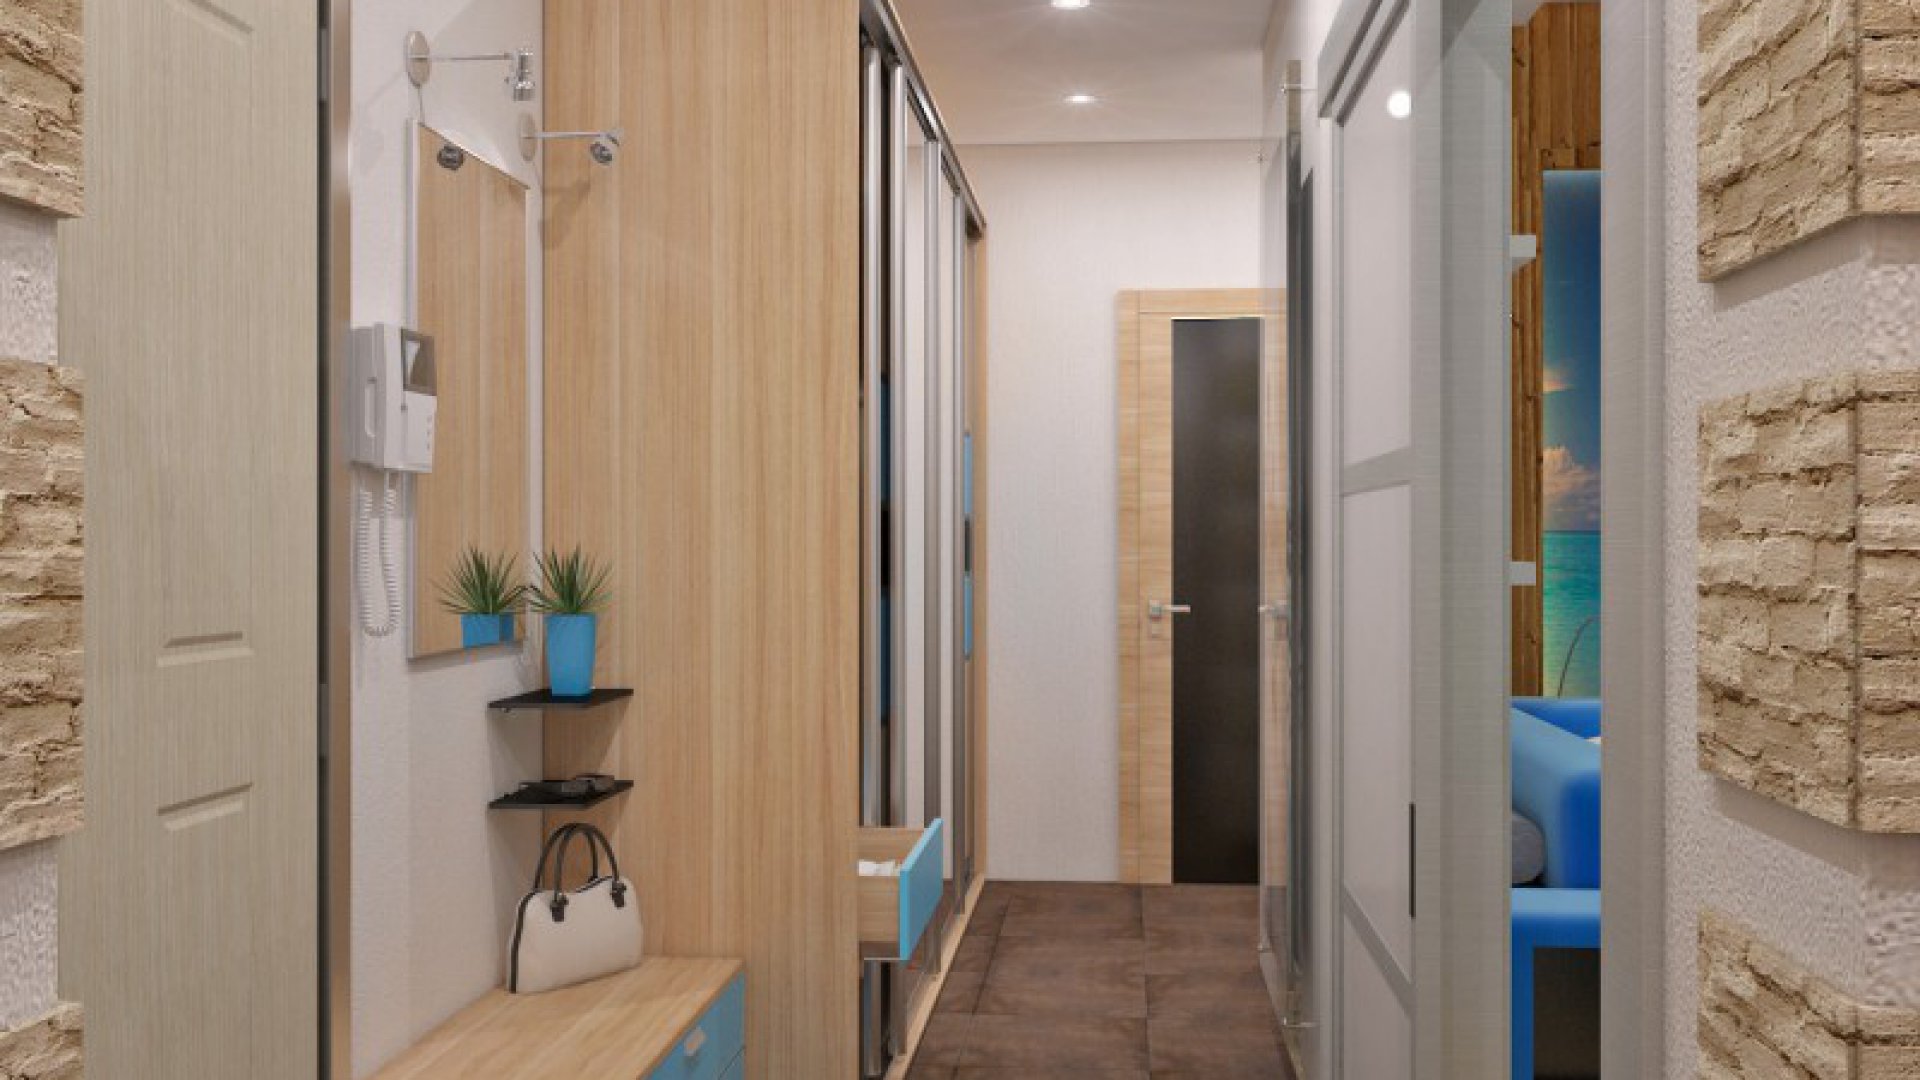 Оформление интерьера коридора в квартире панельного дома: 3 рекомендации